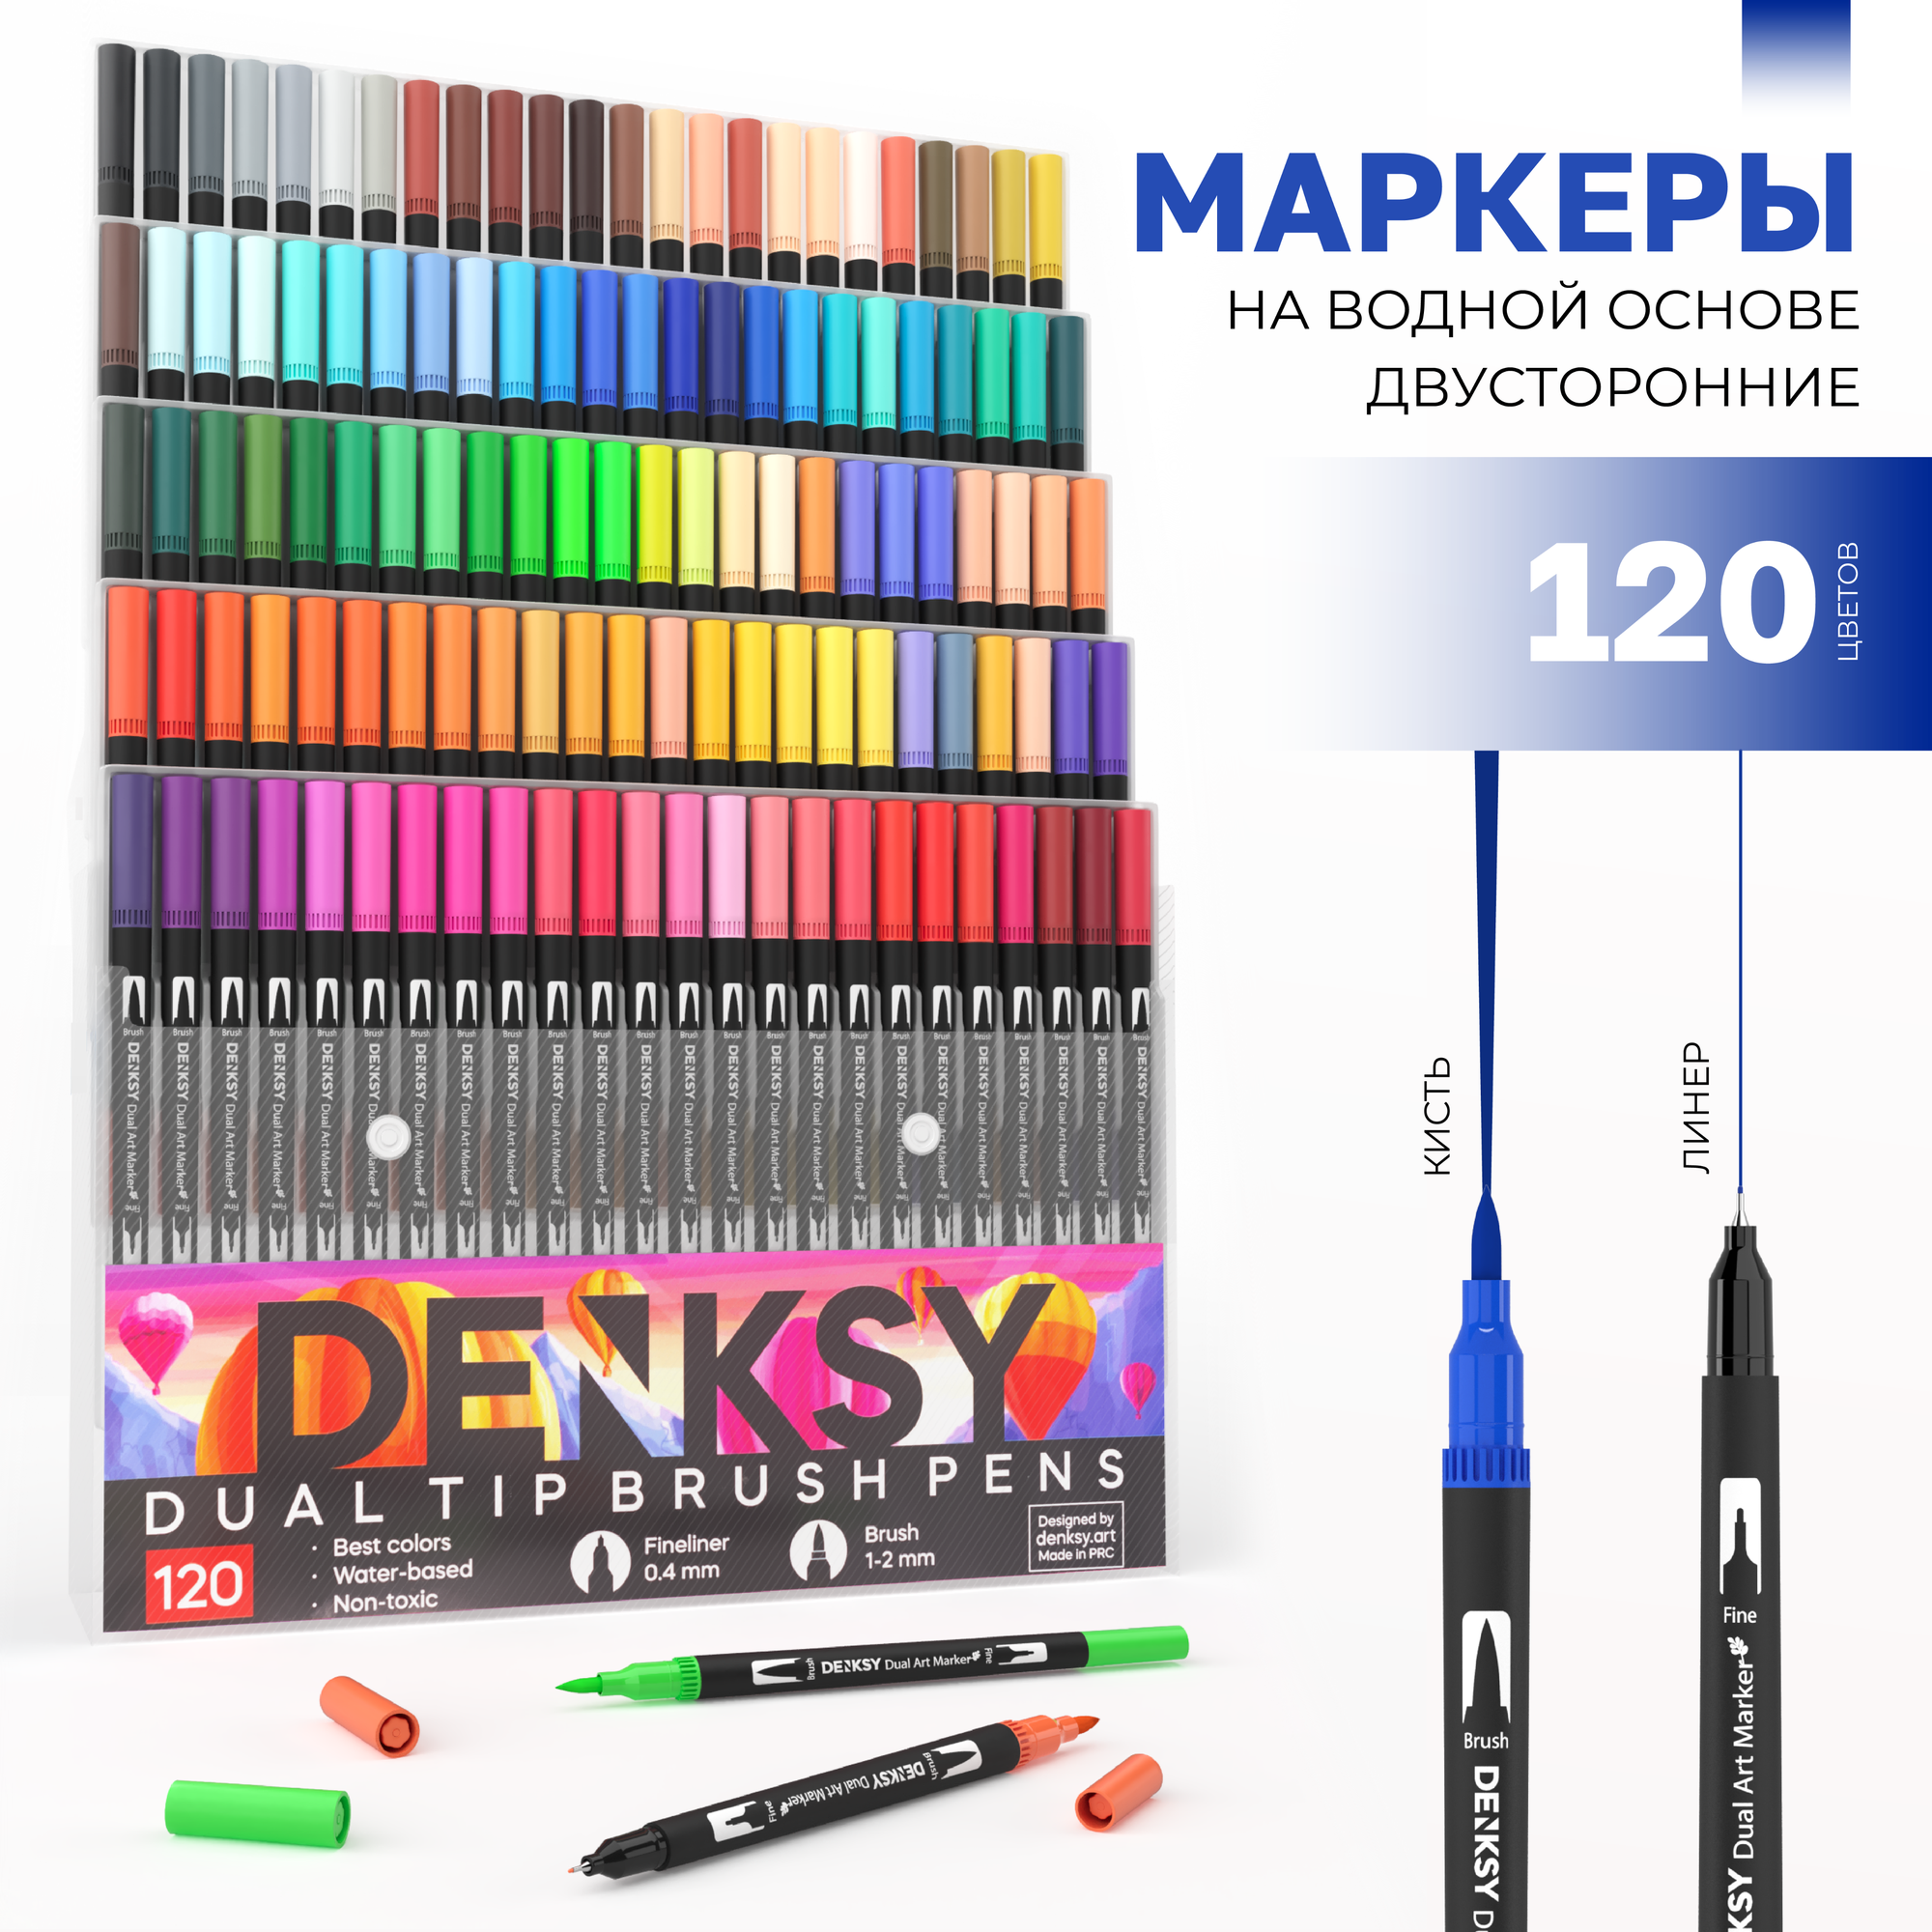 Маркеры для скетчинга DENKSY, 120 цветов, двусторонние (кисть 1-2 мм, линер 0,4 мм), корпус черный